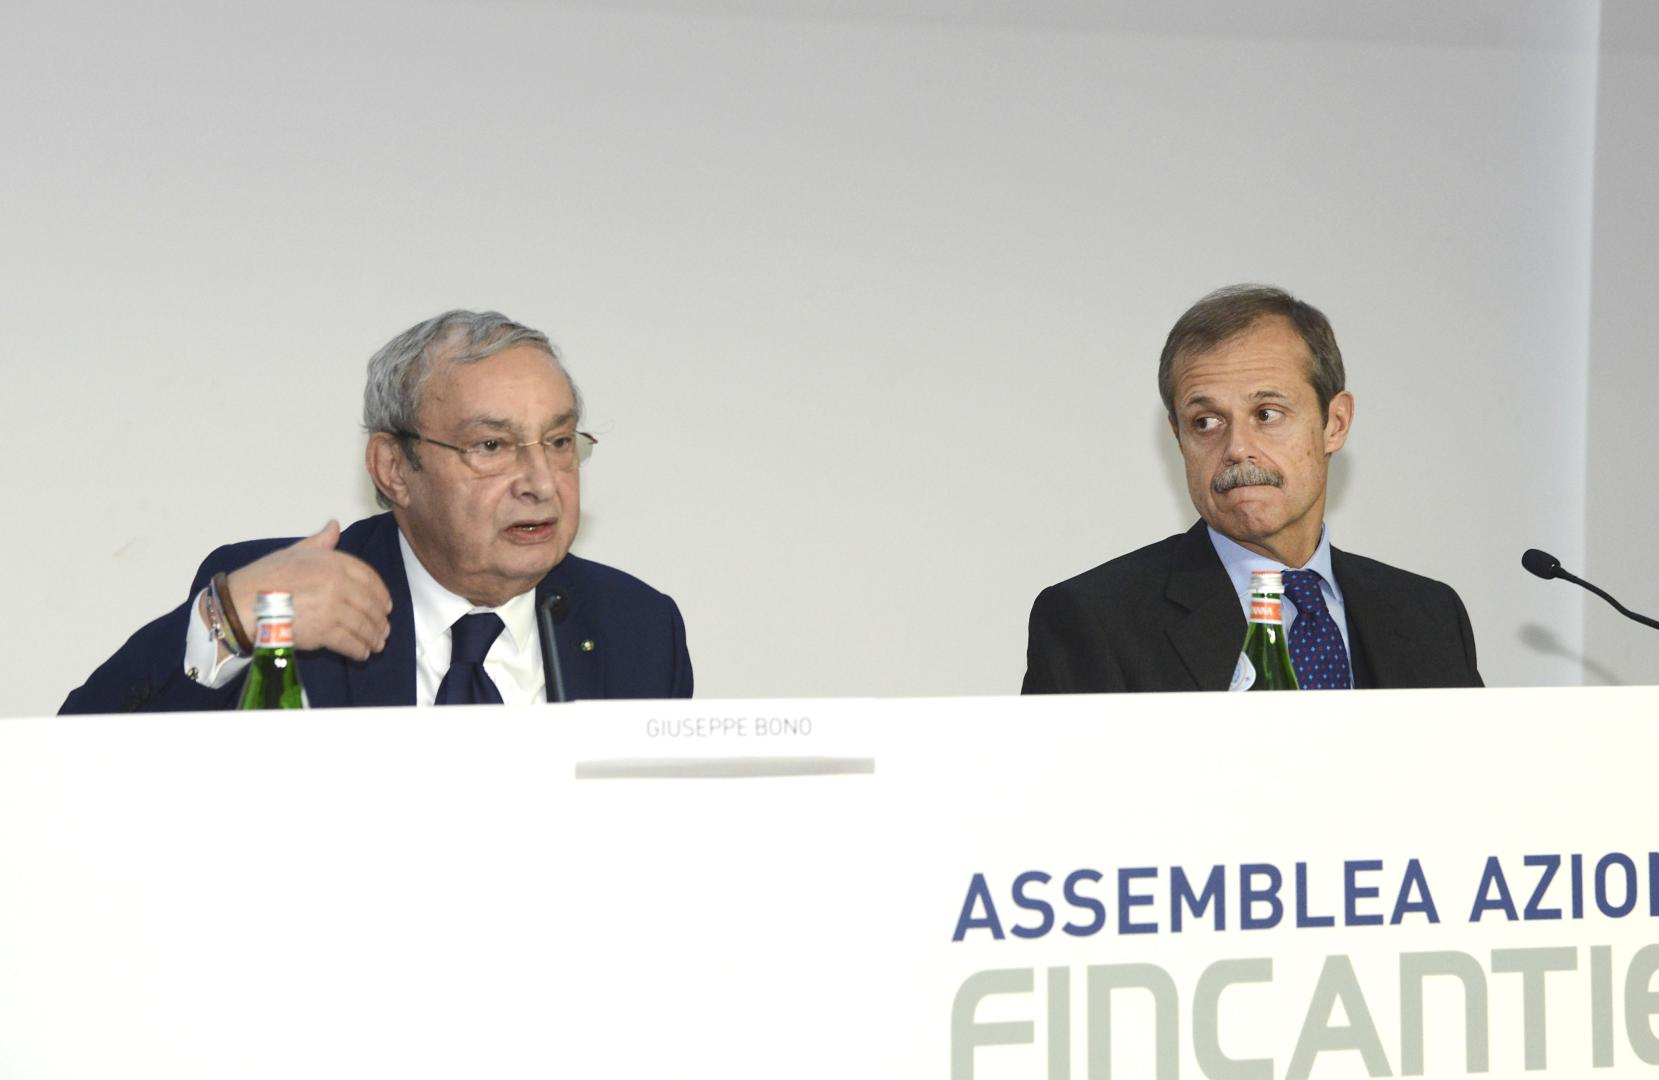 Fincantieri: Giuseppe Bono confirmed as Chief Executive Officer